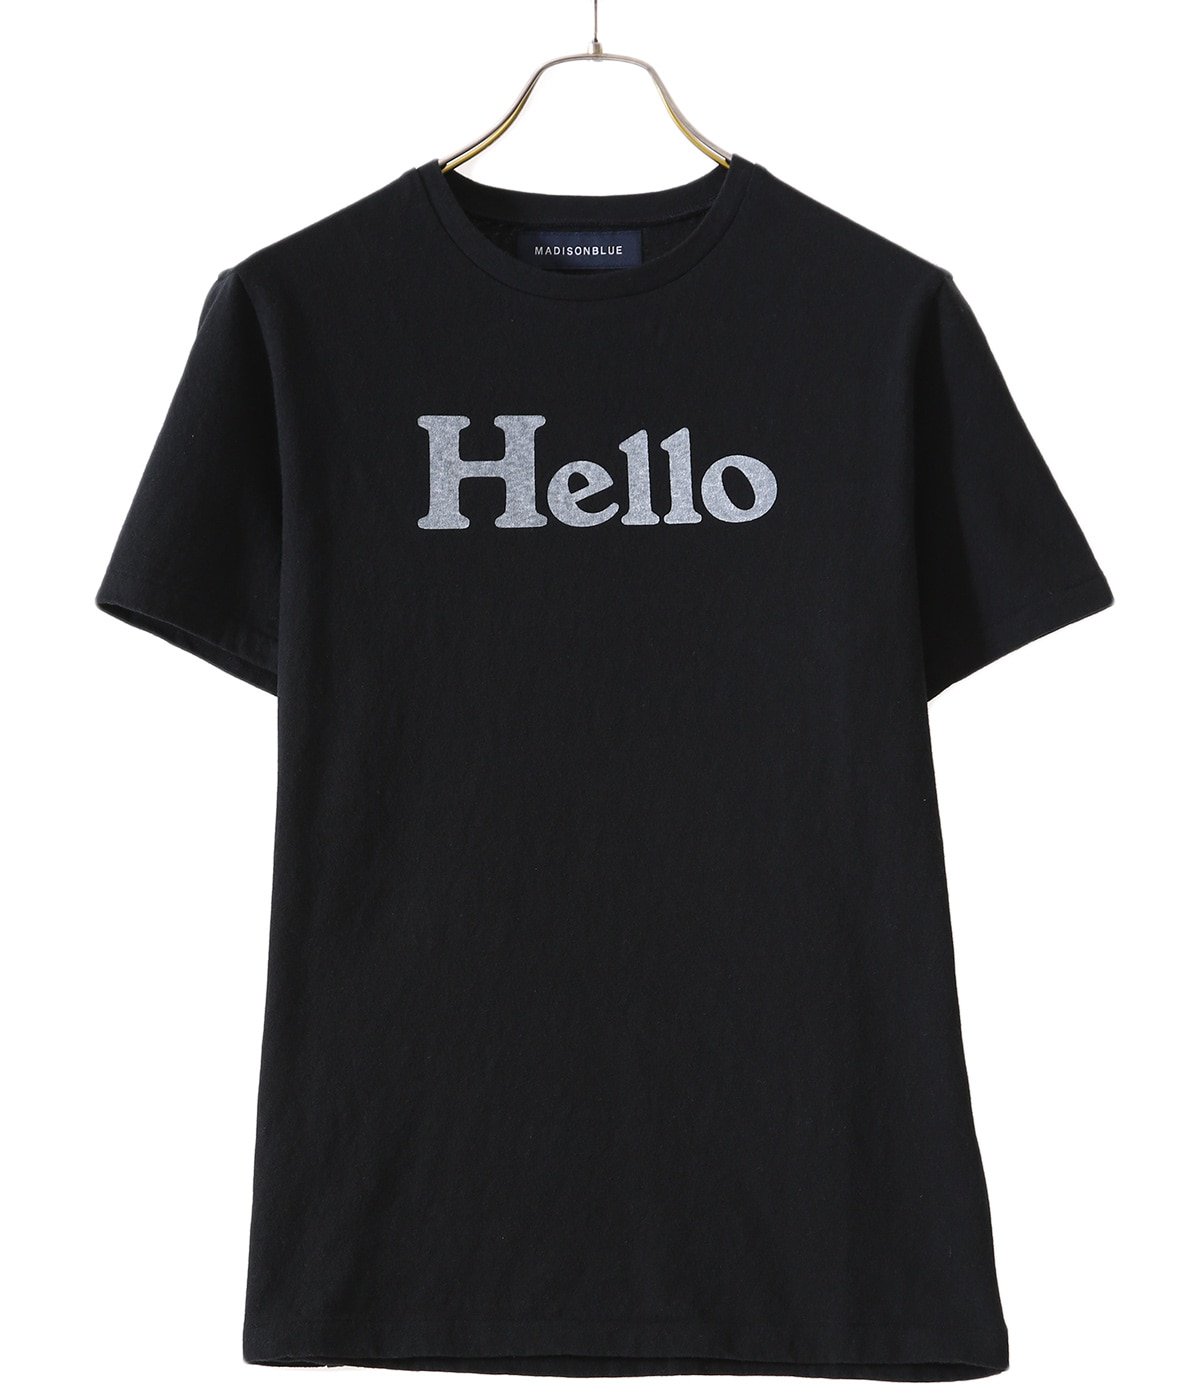 【レディース】HELLO CREW NECK TEE | MADISONBLUE(マディソンブルー) / トップス カットソー半袖・Tシャツ